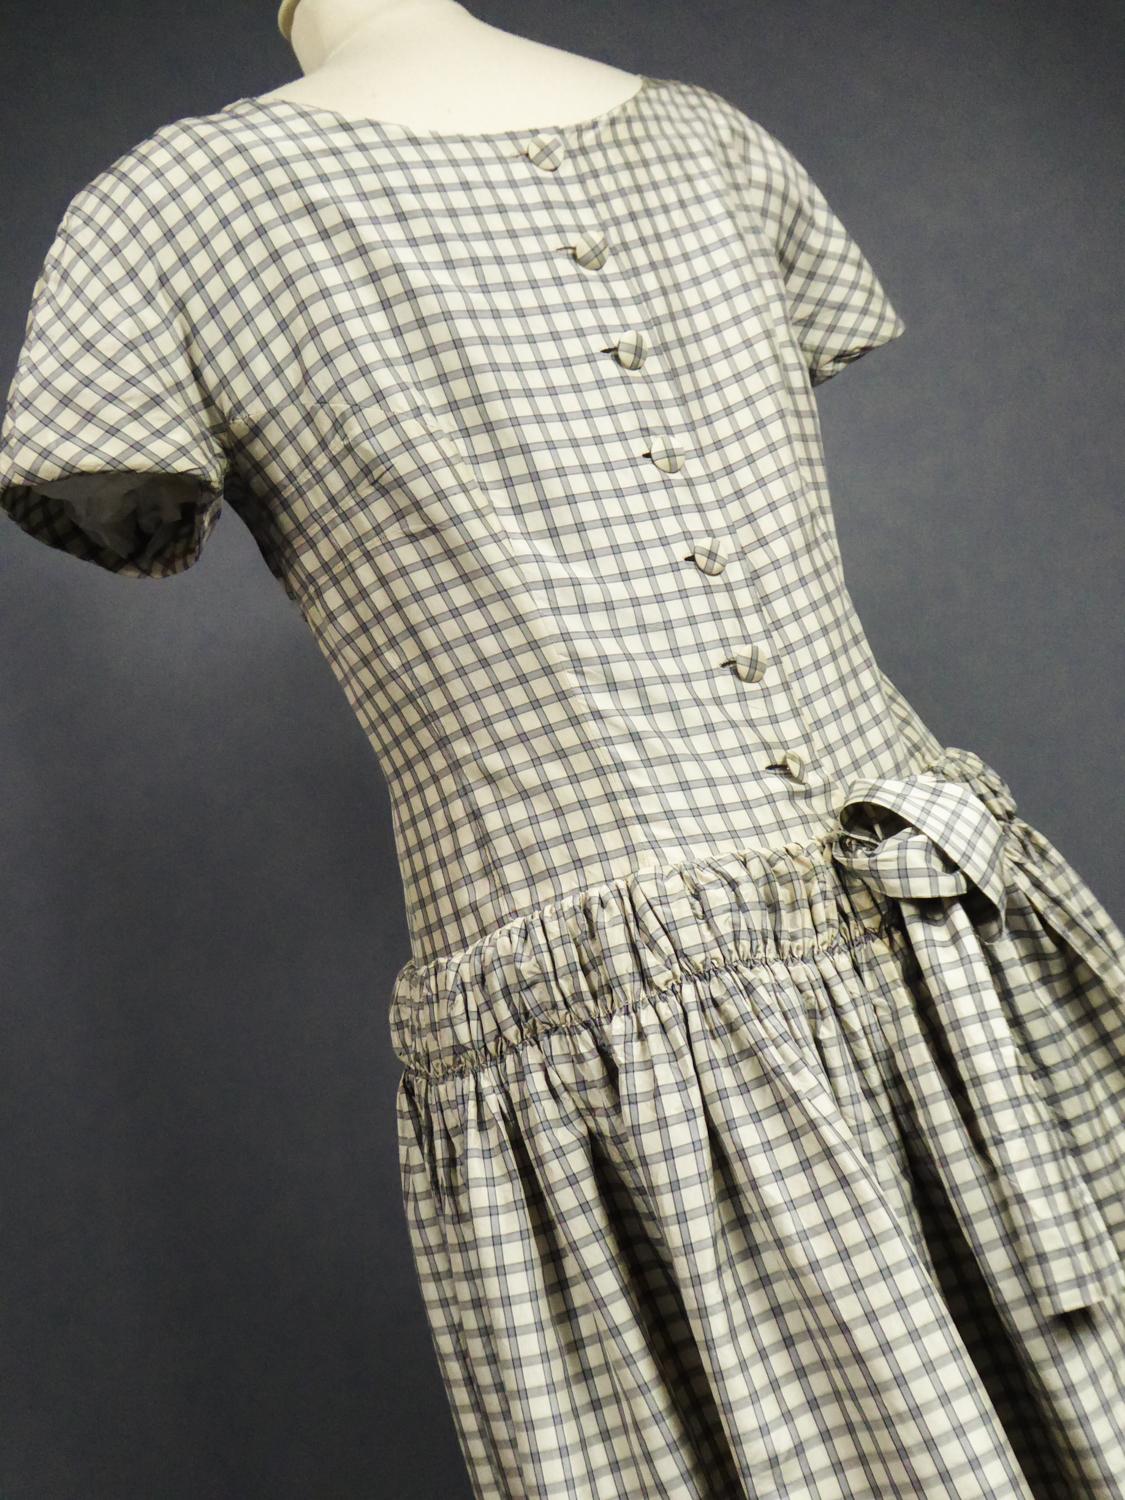 A Cristobal Balenciaga Couture Sac Dress in Plaid Taffeta n°55418 Circa 1958 8